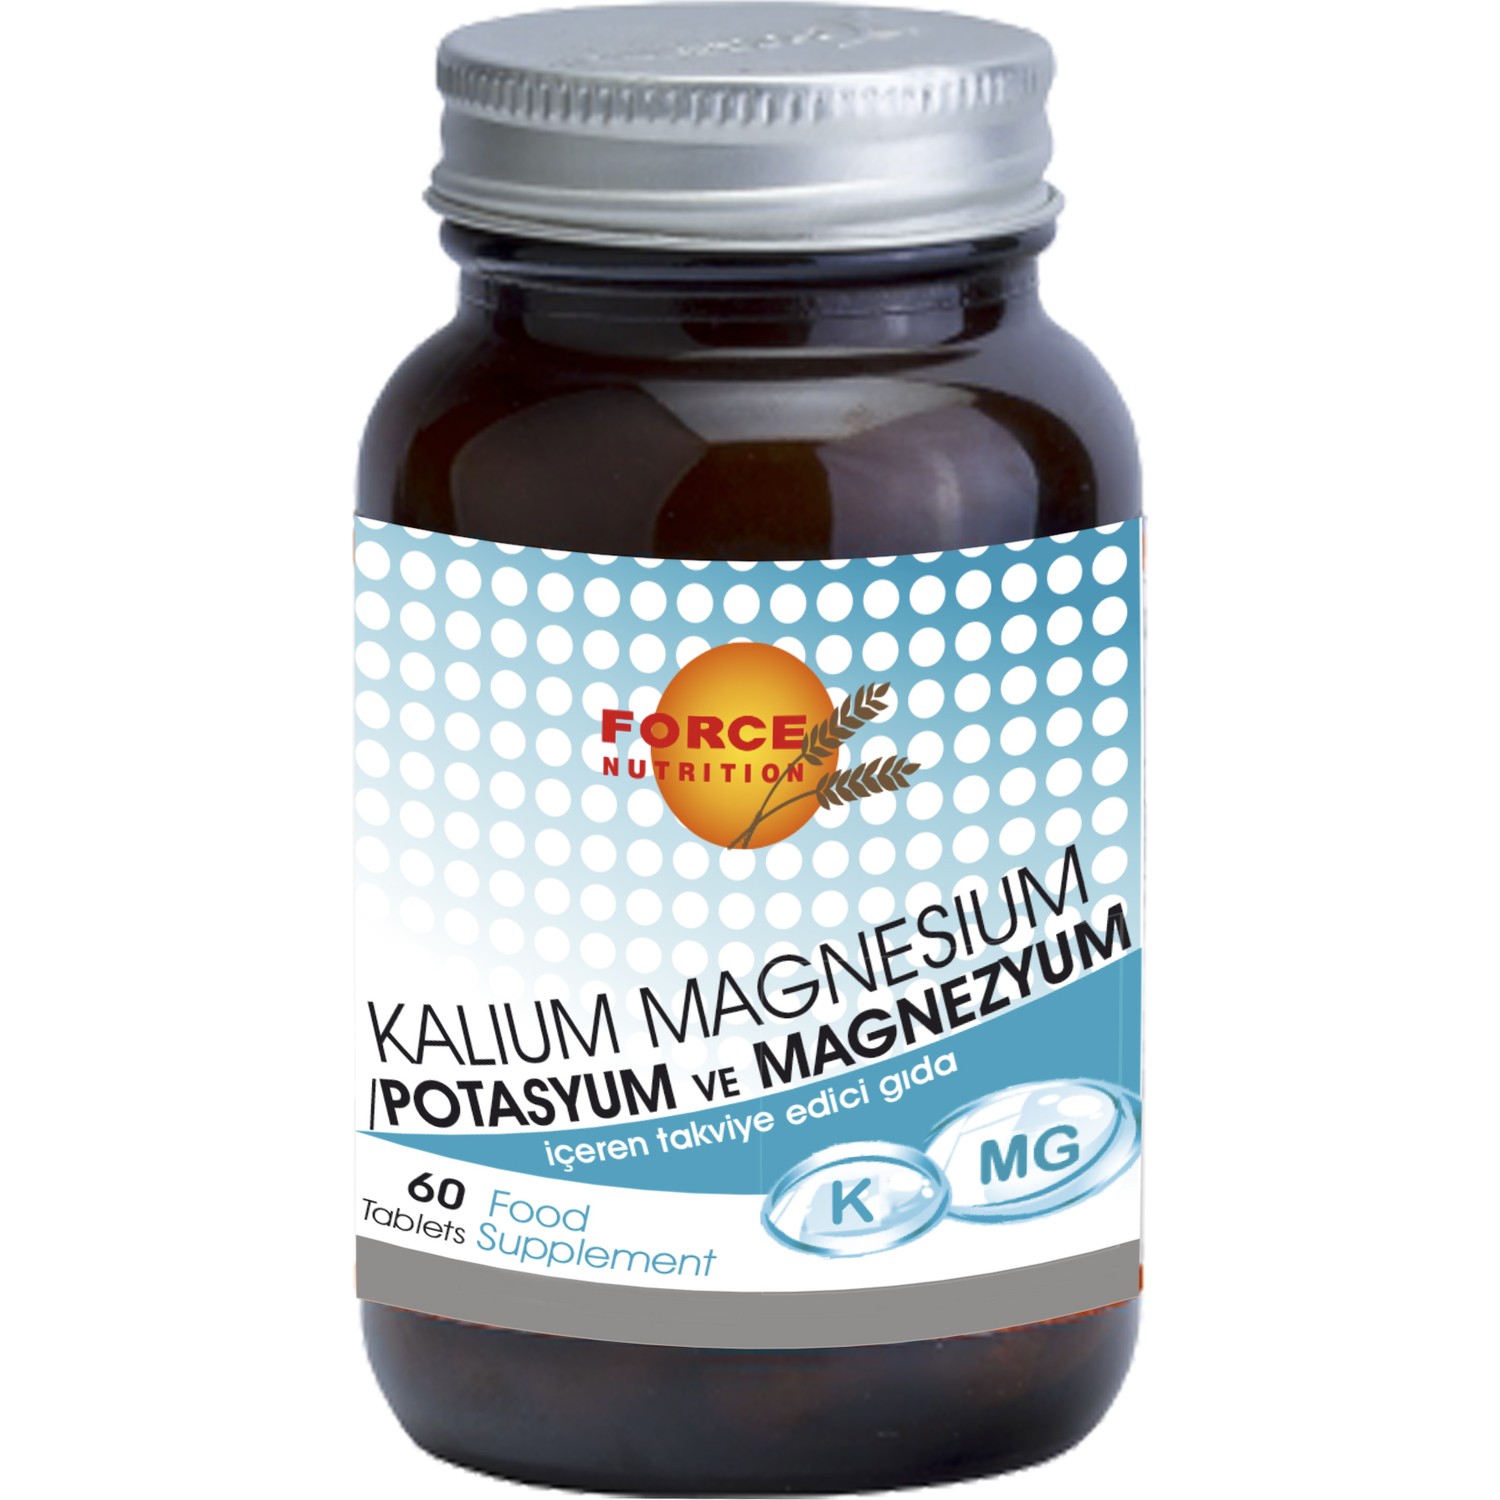 yüksek tansiyon potasyum ve magnezyum için gıda)